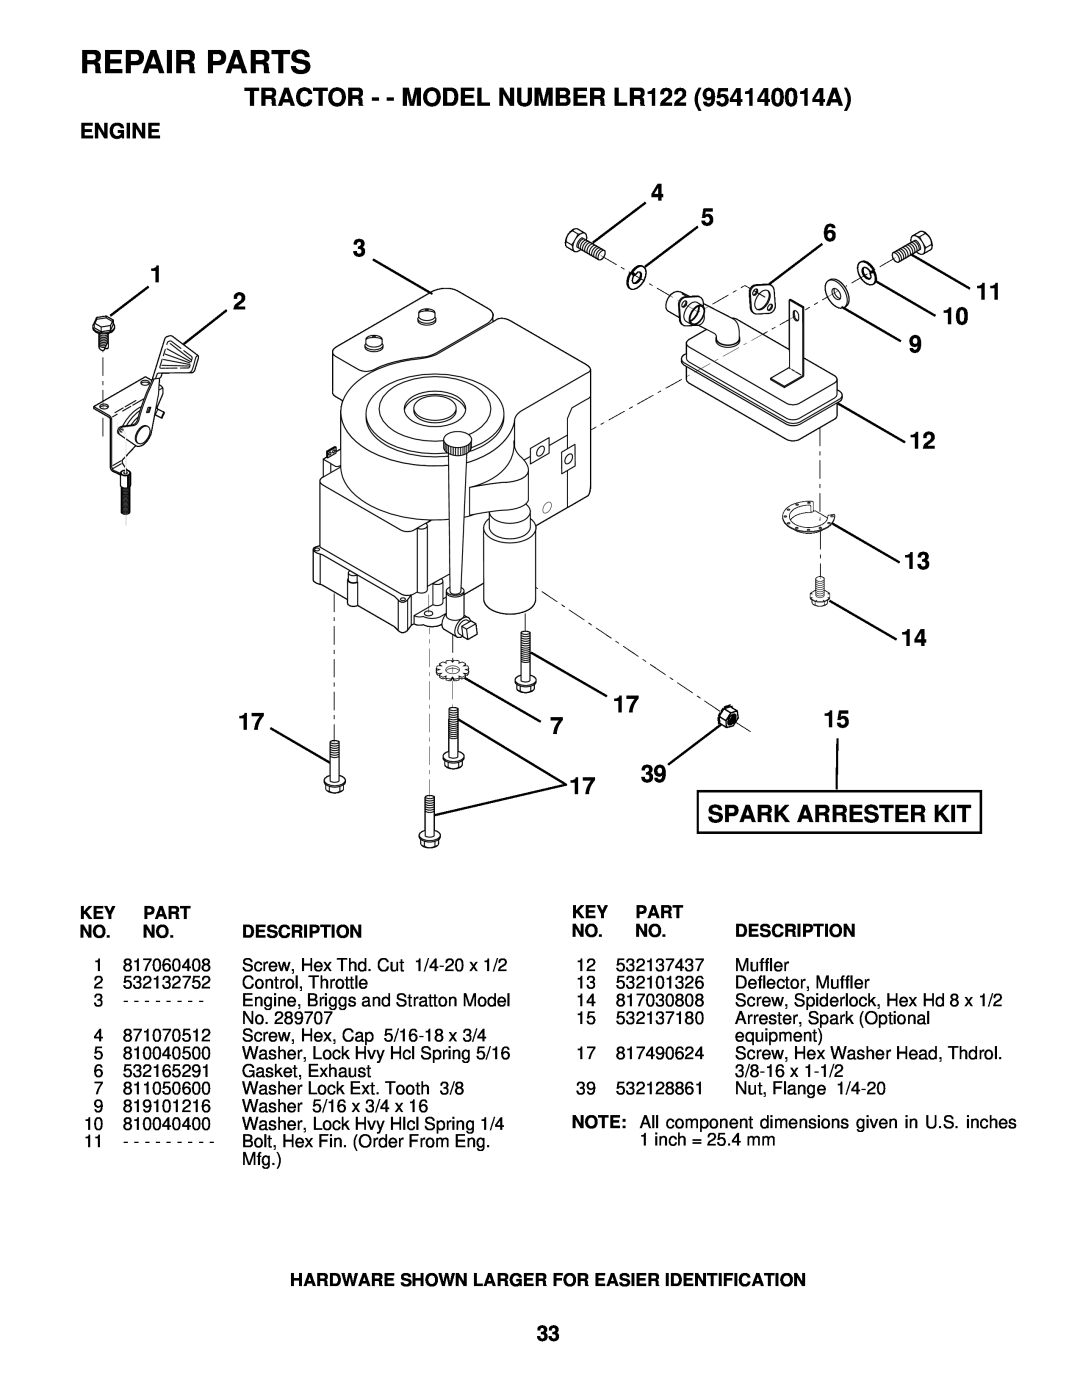 Husqvarna owner manual Engine, Repair Parts, TRACTOR - - MODEL NUMBER LR122 954140014A, Spark Arrester Kit, Description 